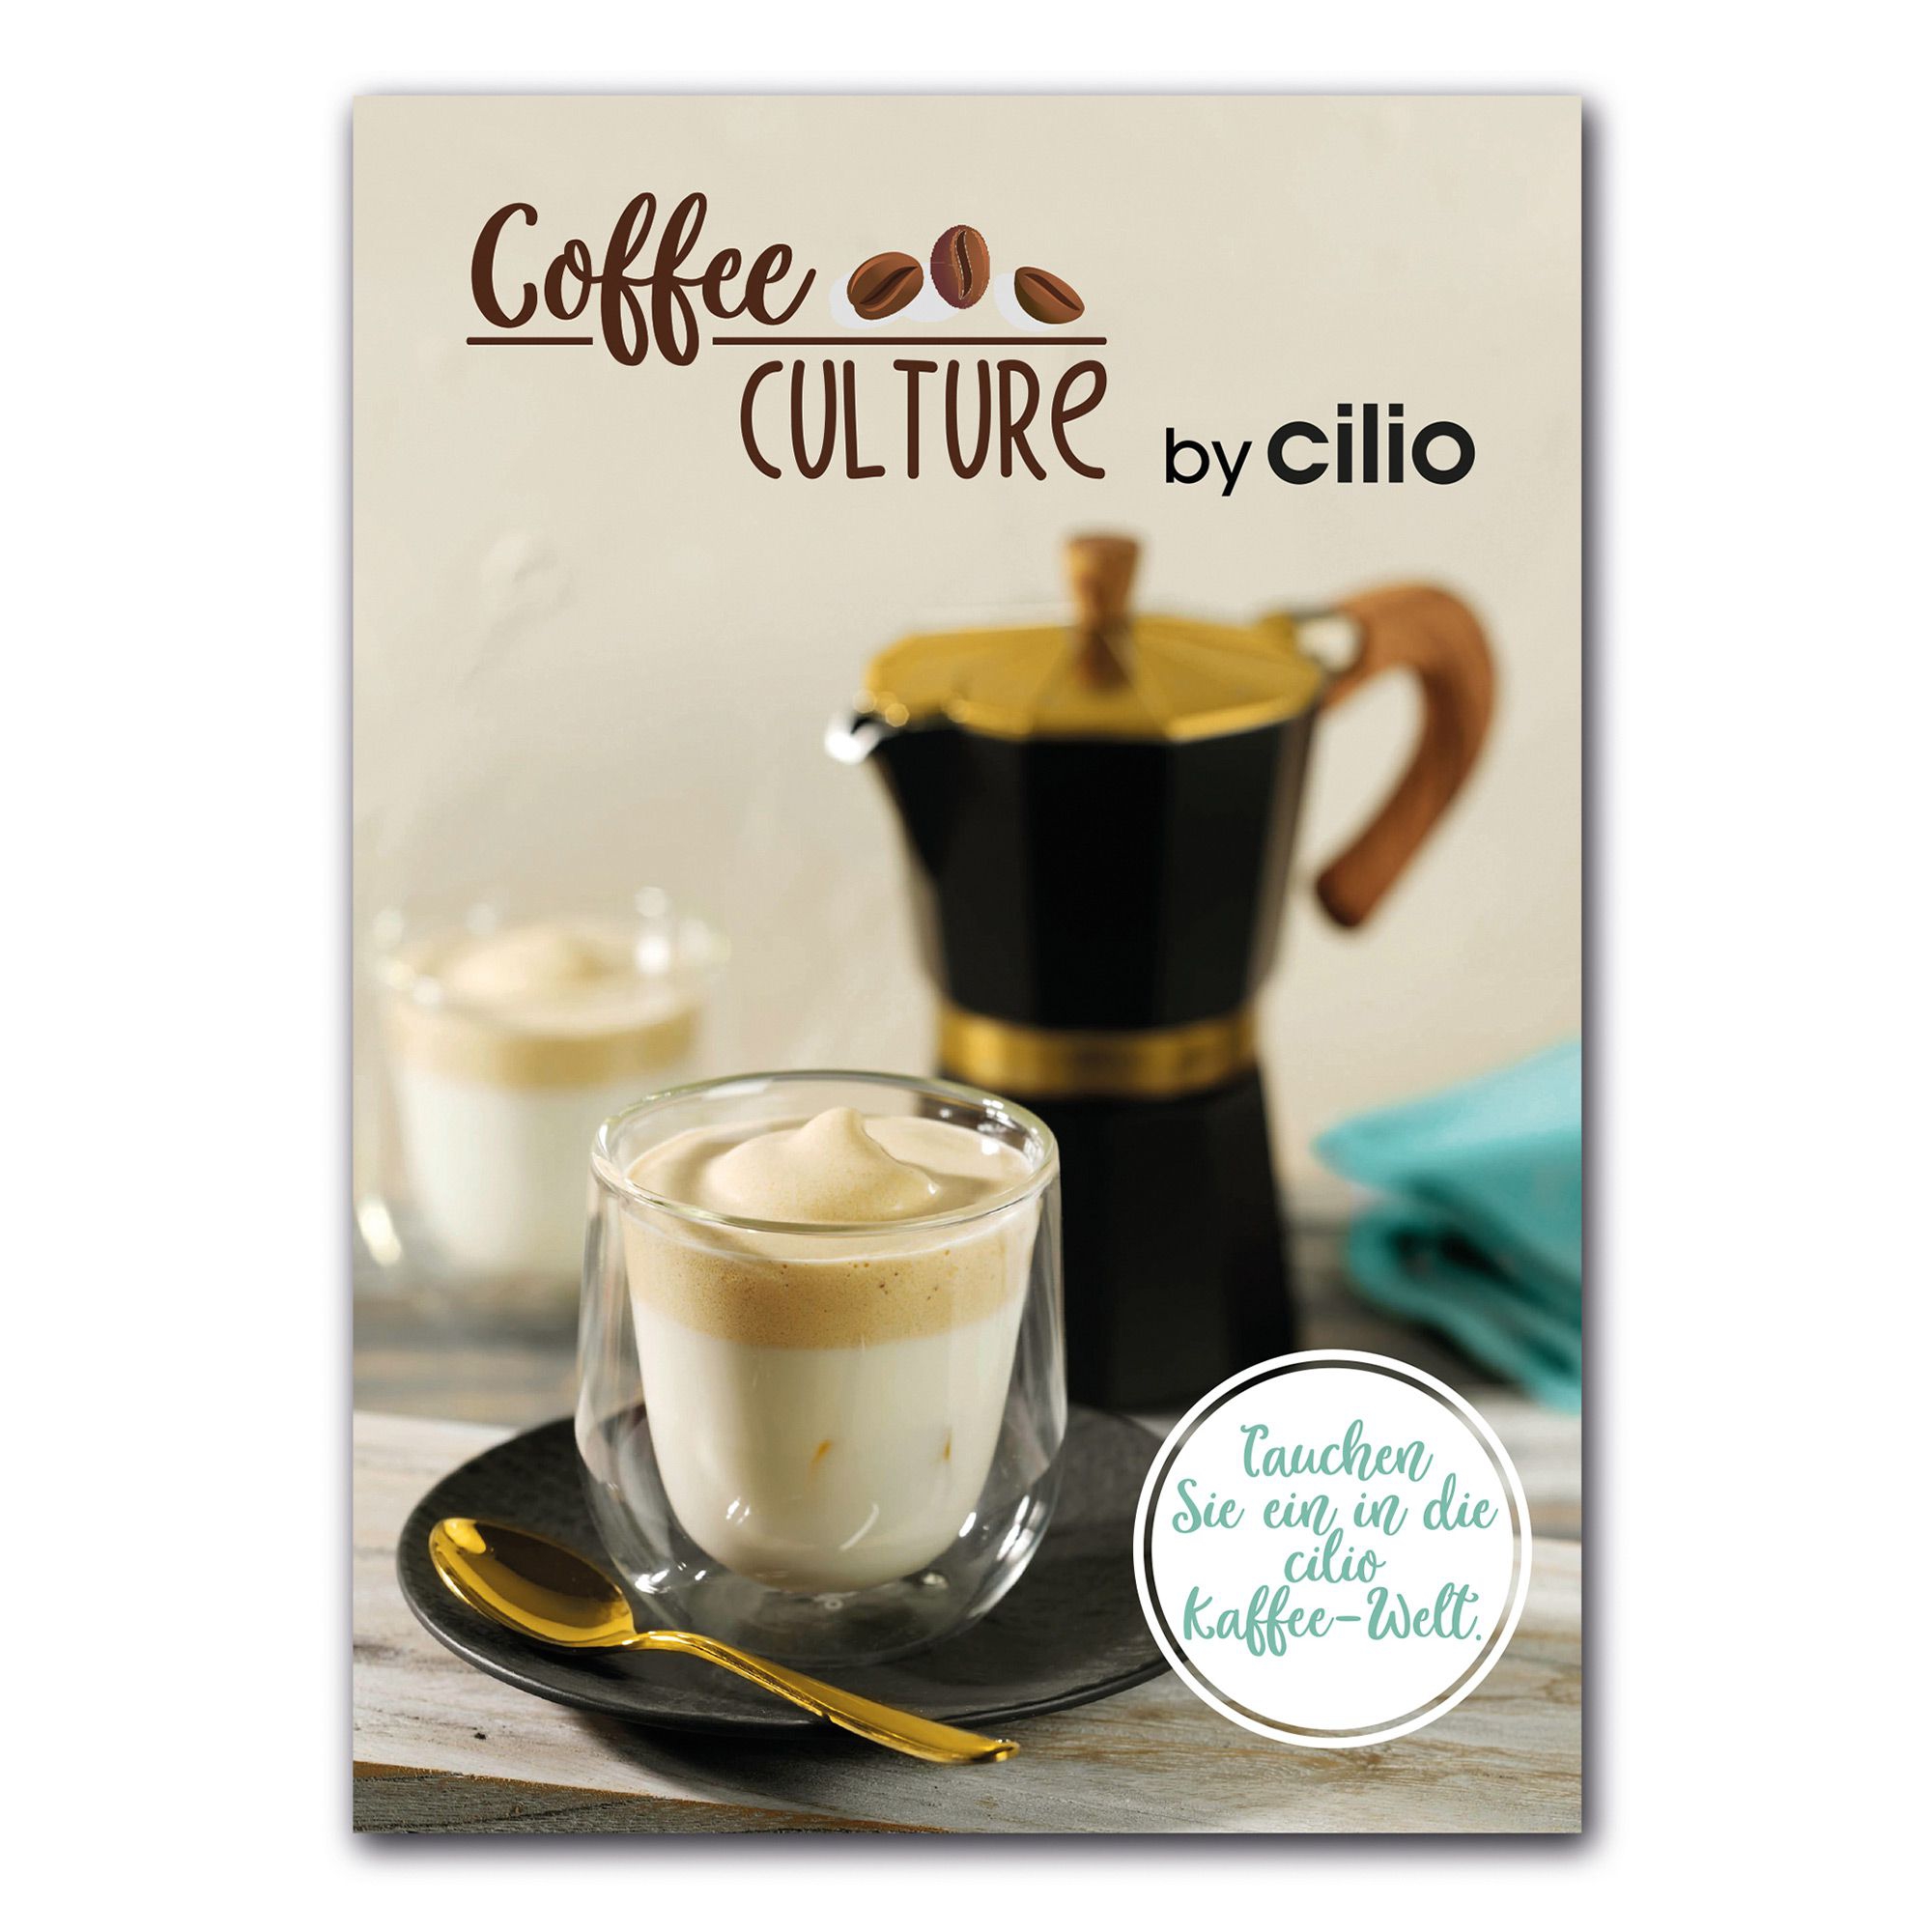 Cilio - Coffee CULTURE by Cilio - 28 creative  recipes